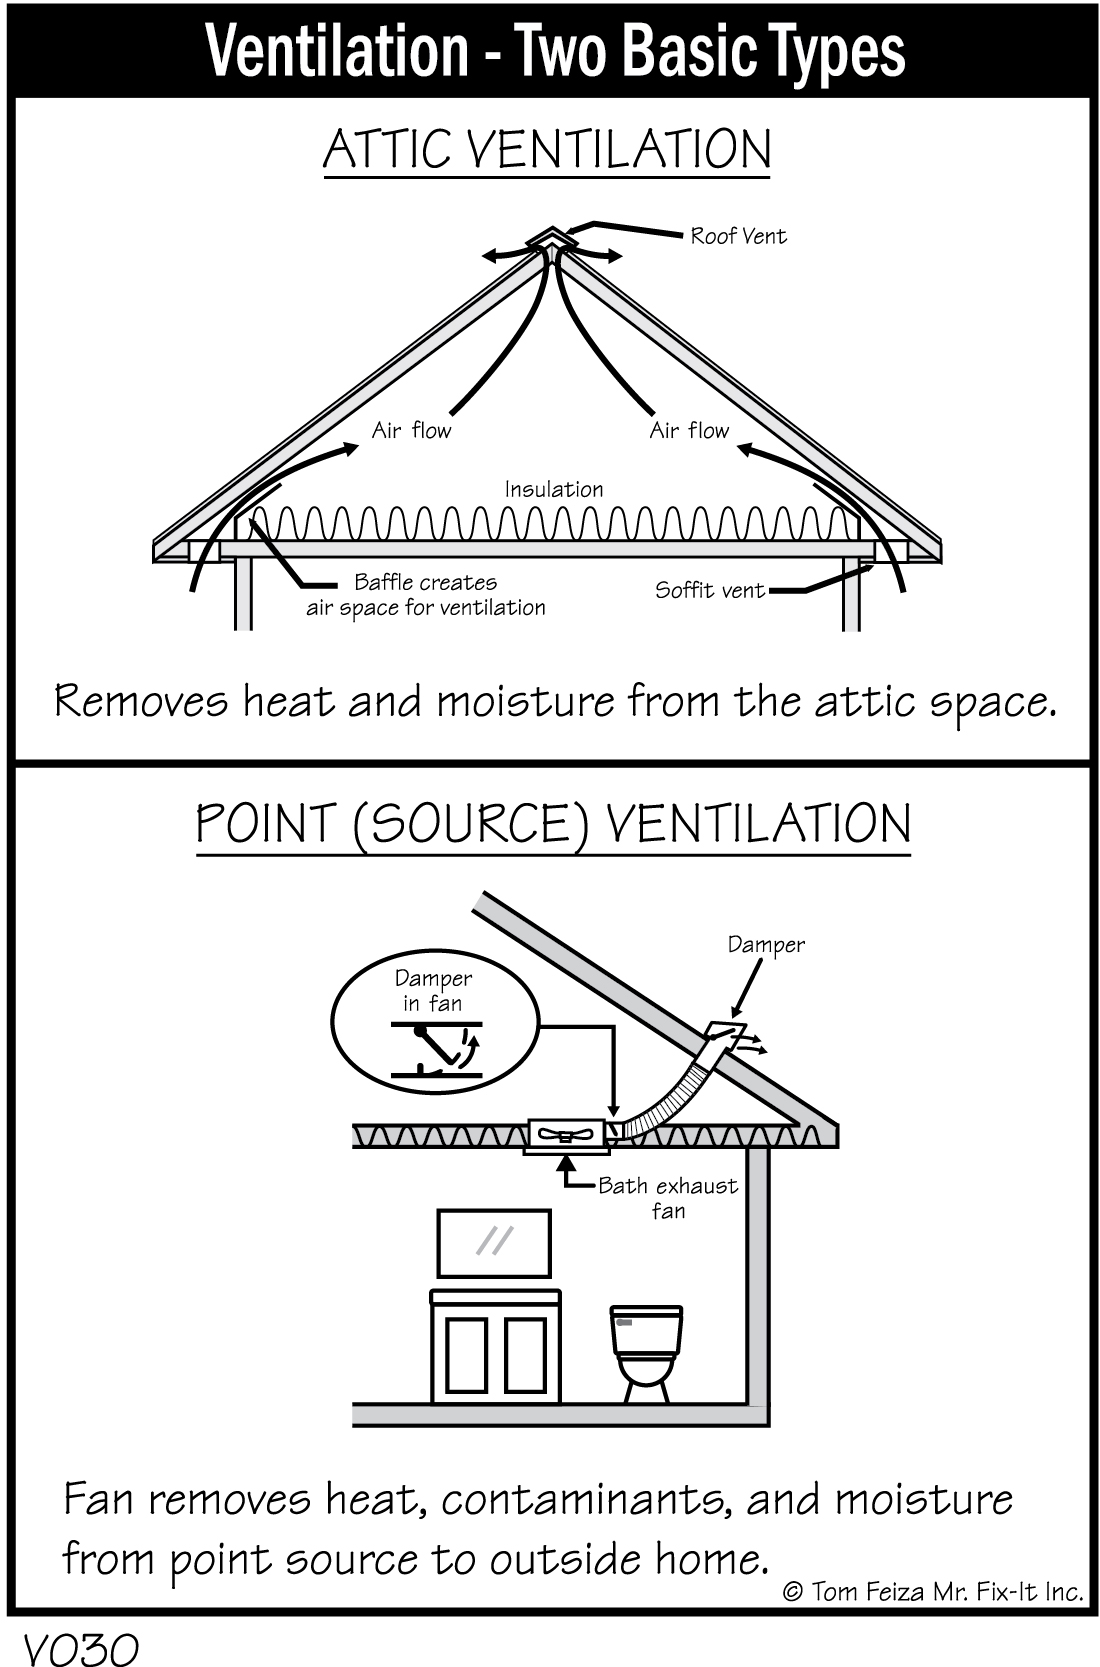 V030 - Ventilation - Two Basic Types